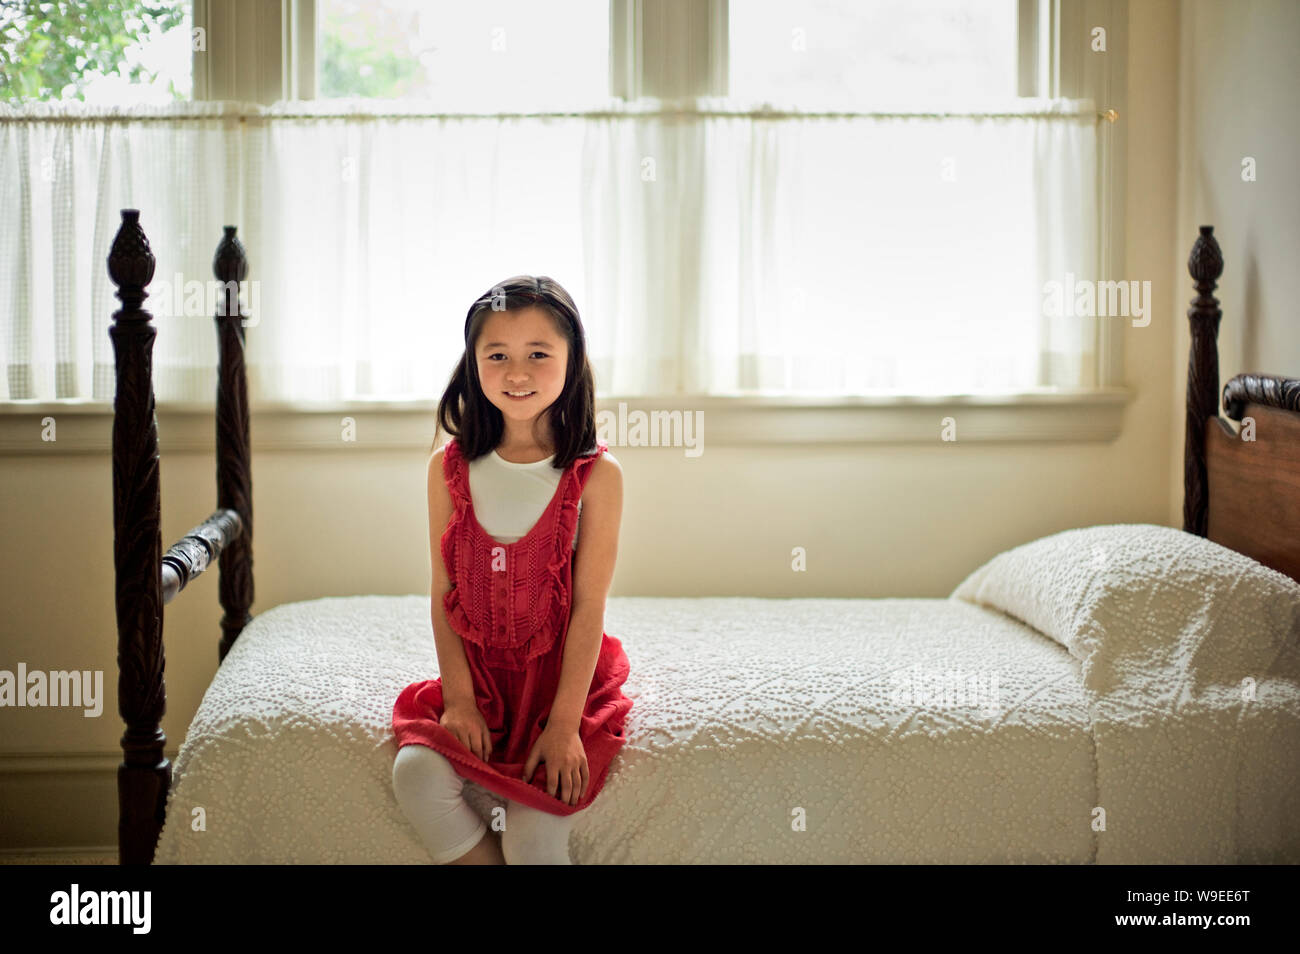 Junges Mädchen sitzt auf der Kante von einem Bett und lächelt, als sie für ein Portrait Posen. Stockfoto